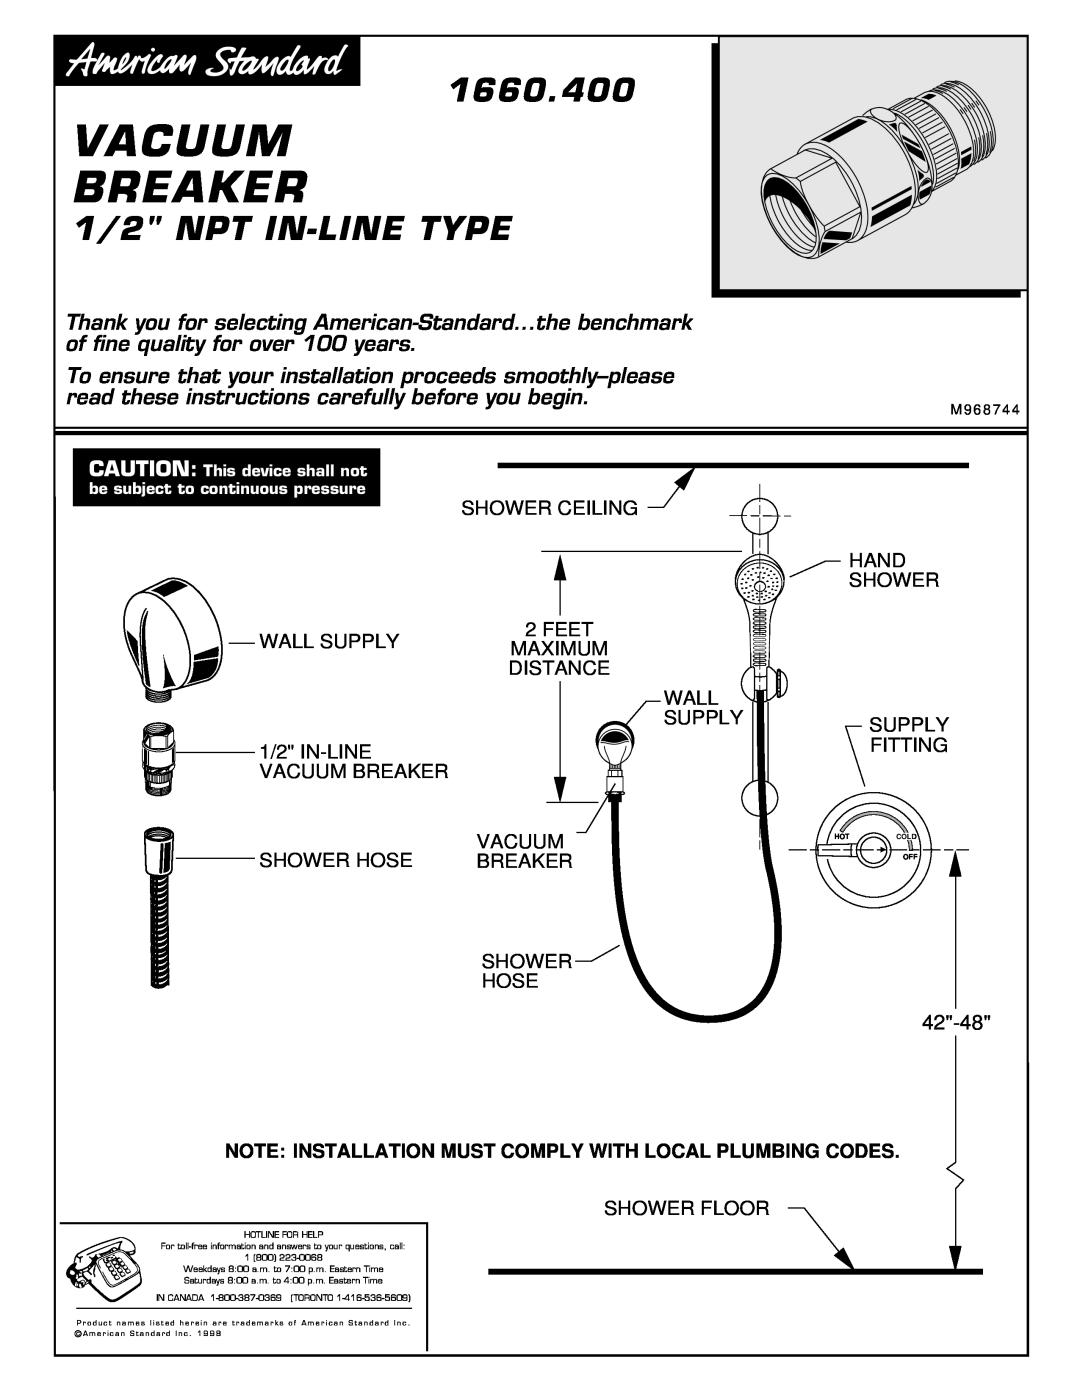 American Standard 1660.400 manual Vacuum Breaker, 1/2 NPT IN-LINETYPE 